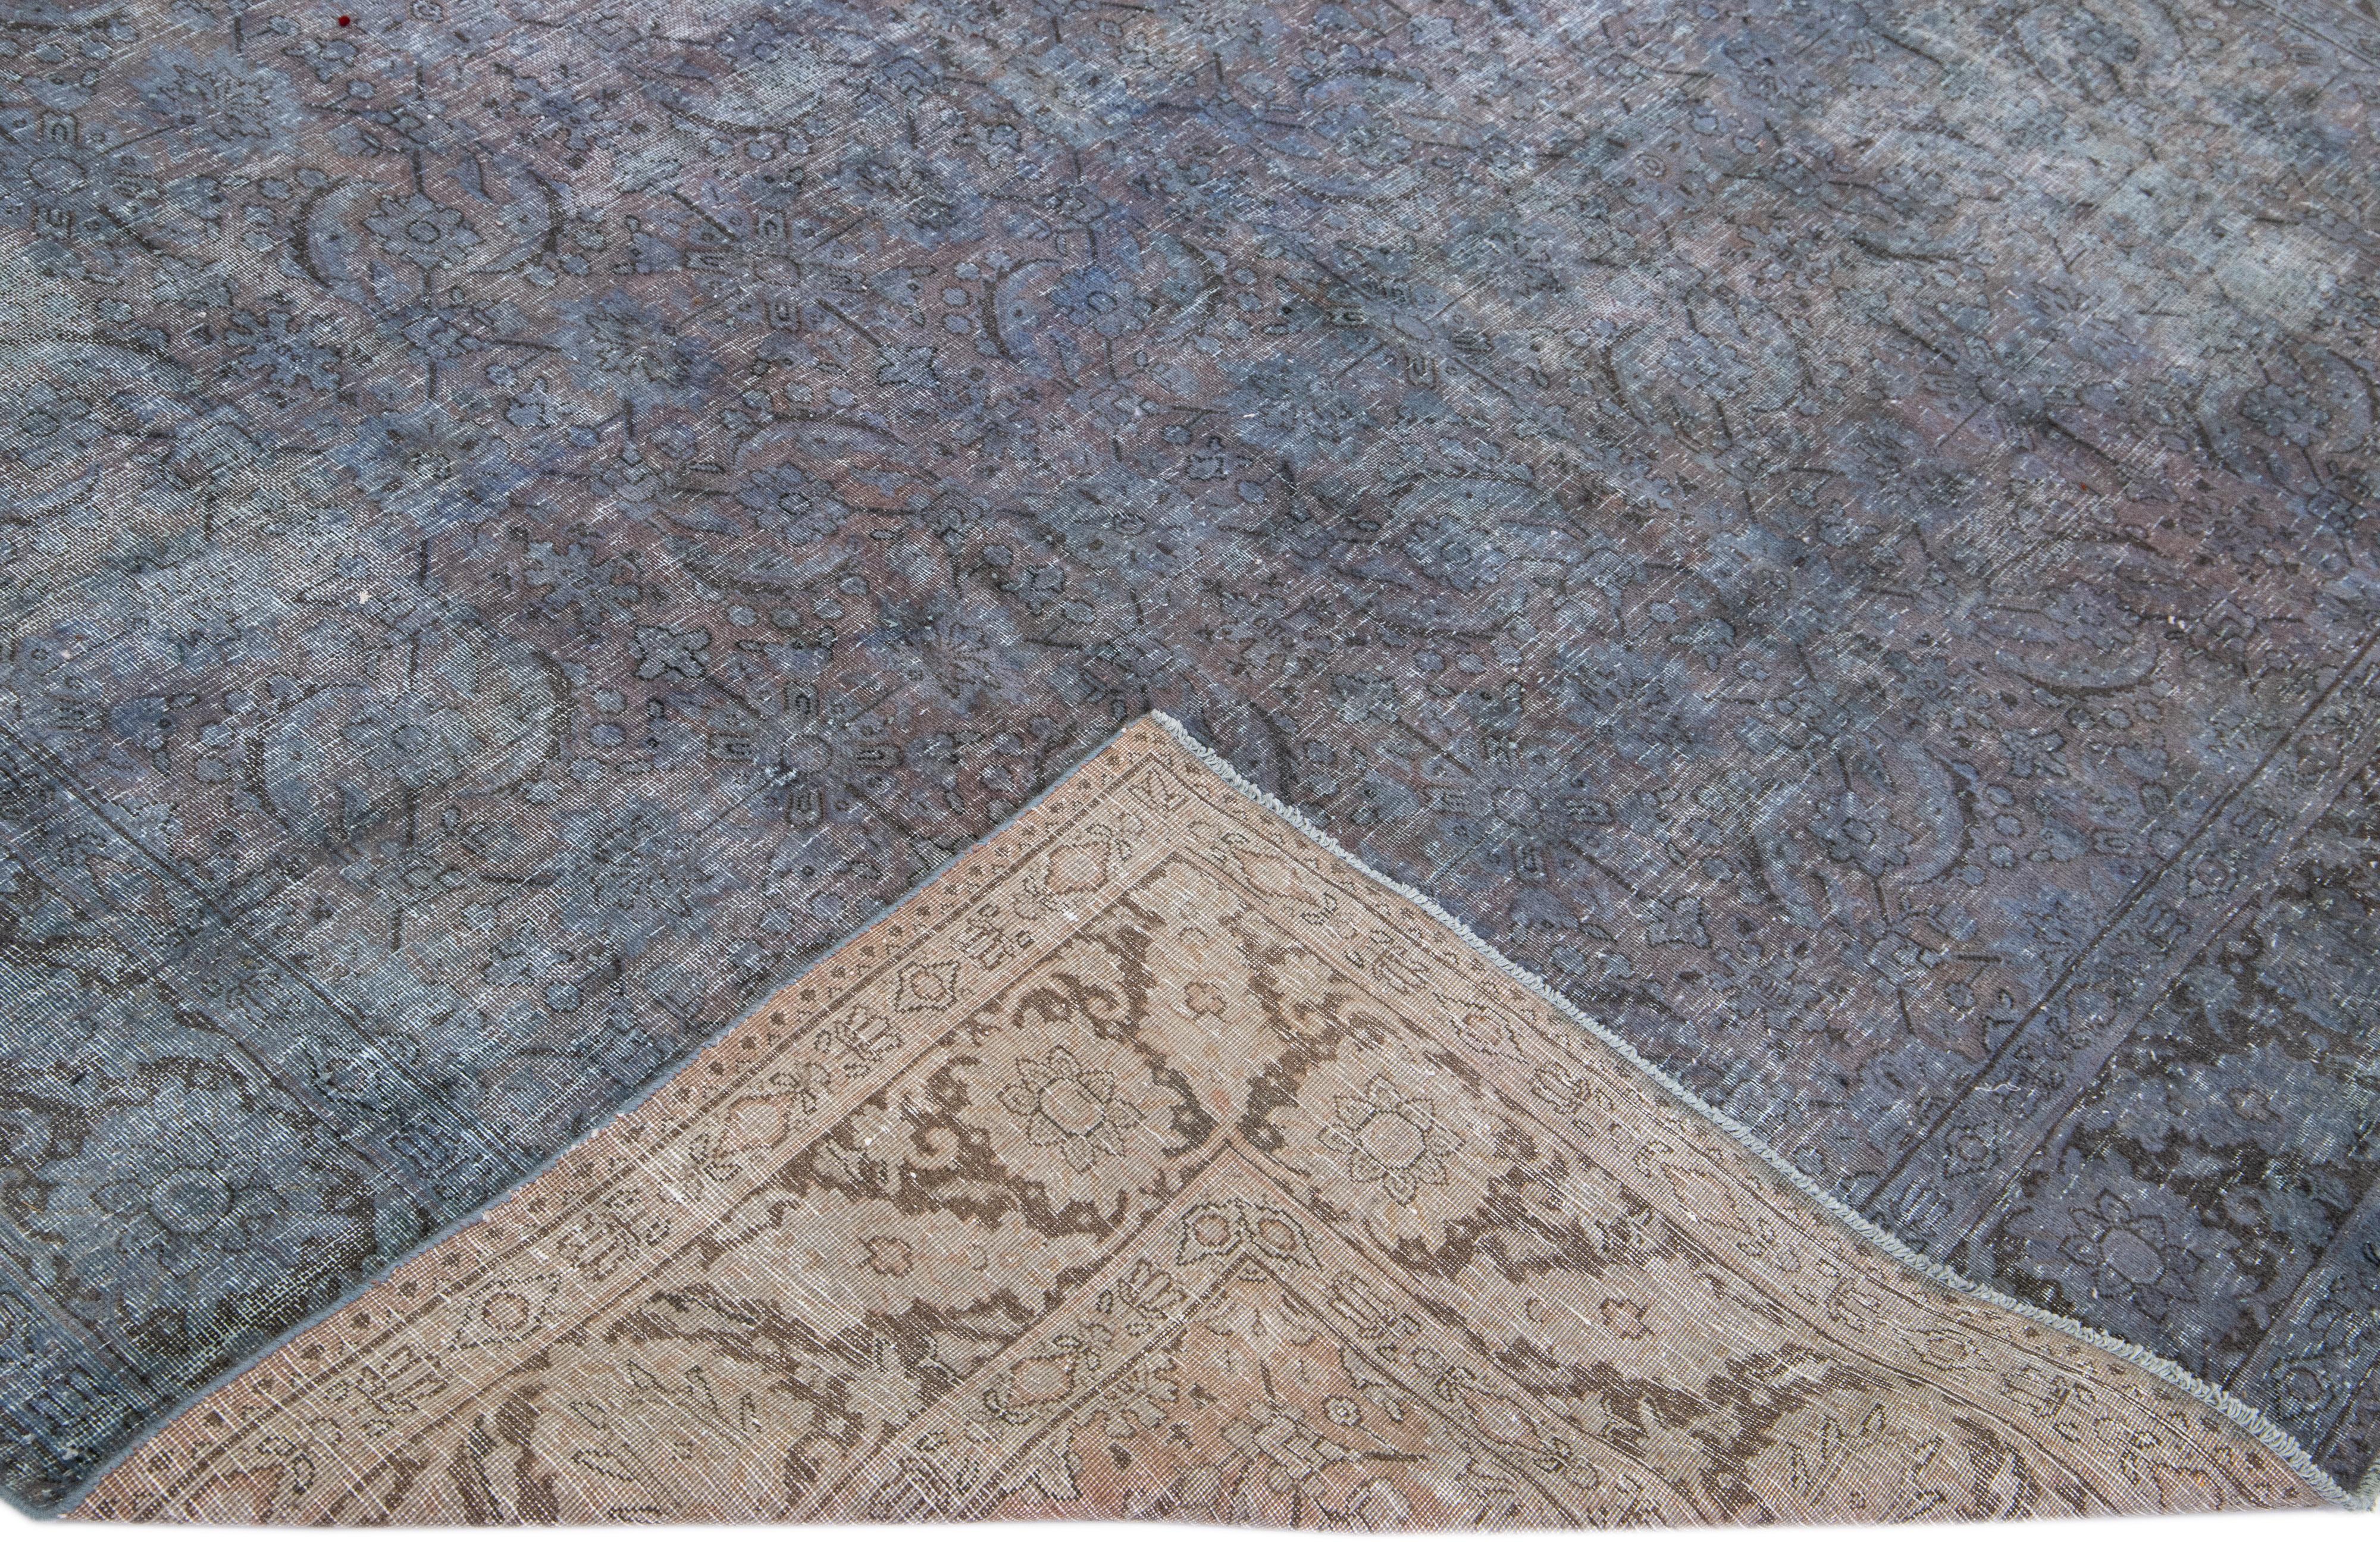 Schöner handgeknüpfter Teppich aus gefärbter Wolle mit einem blauen Feld. Dieser Perserteppich hat graue und braune Akzente in einem floralen Allover-Muster.

Dieser Teppich misst: 7'9